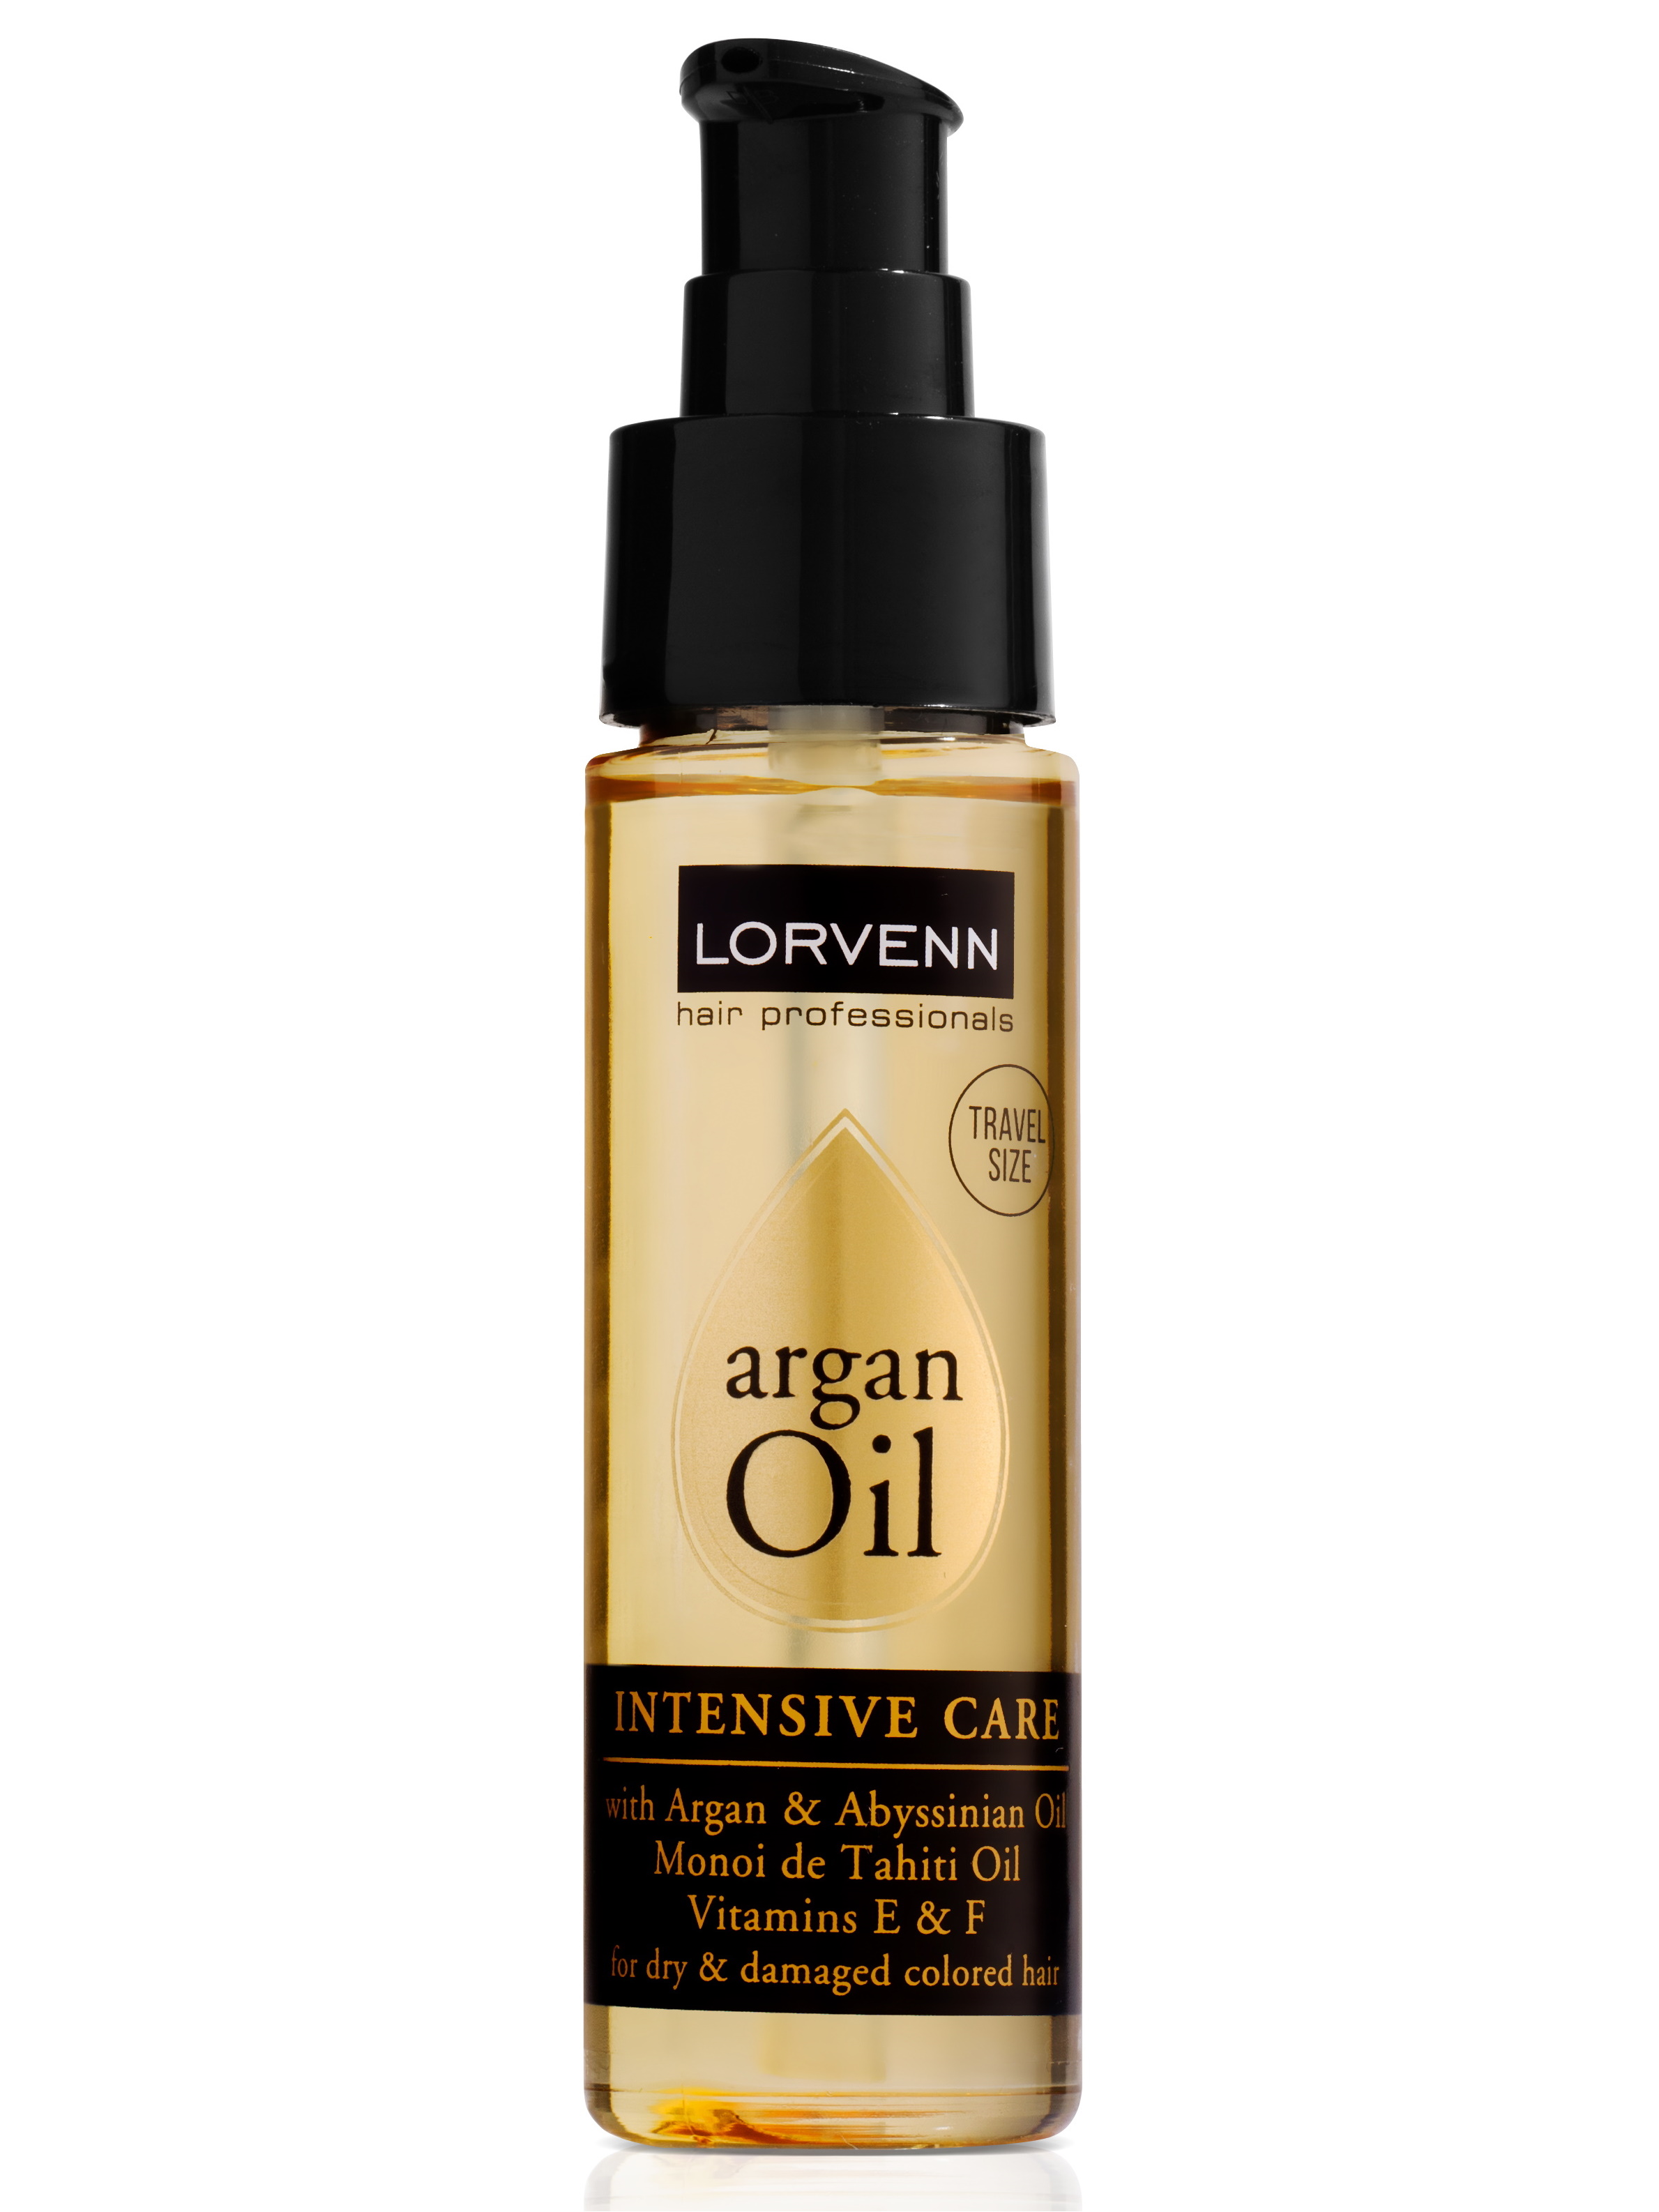 фото Масло-эликсир argan oil для питания волос lorvenn hair professionals интенсивное 50 мл